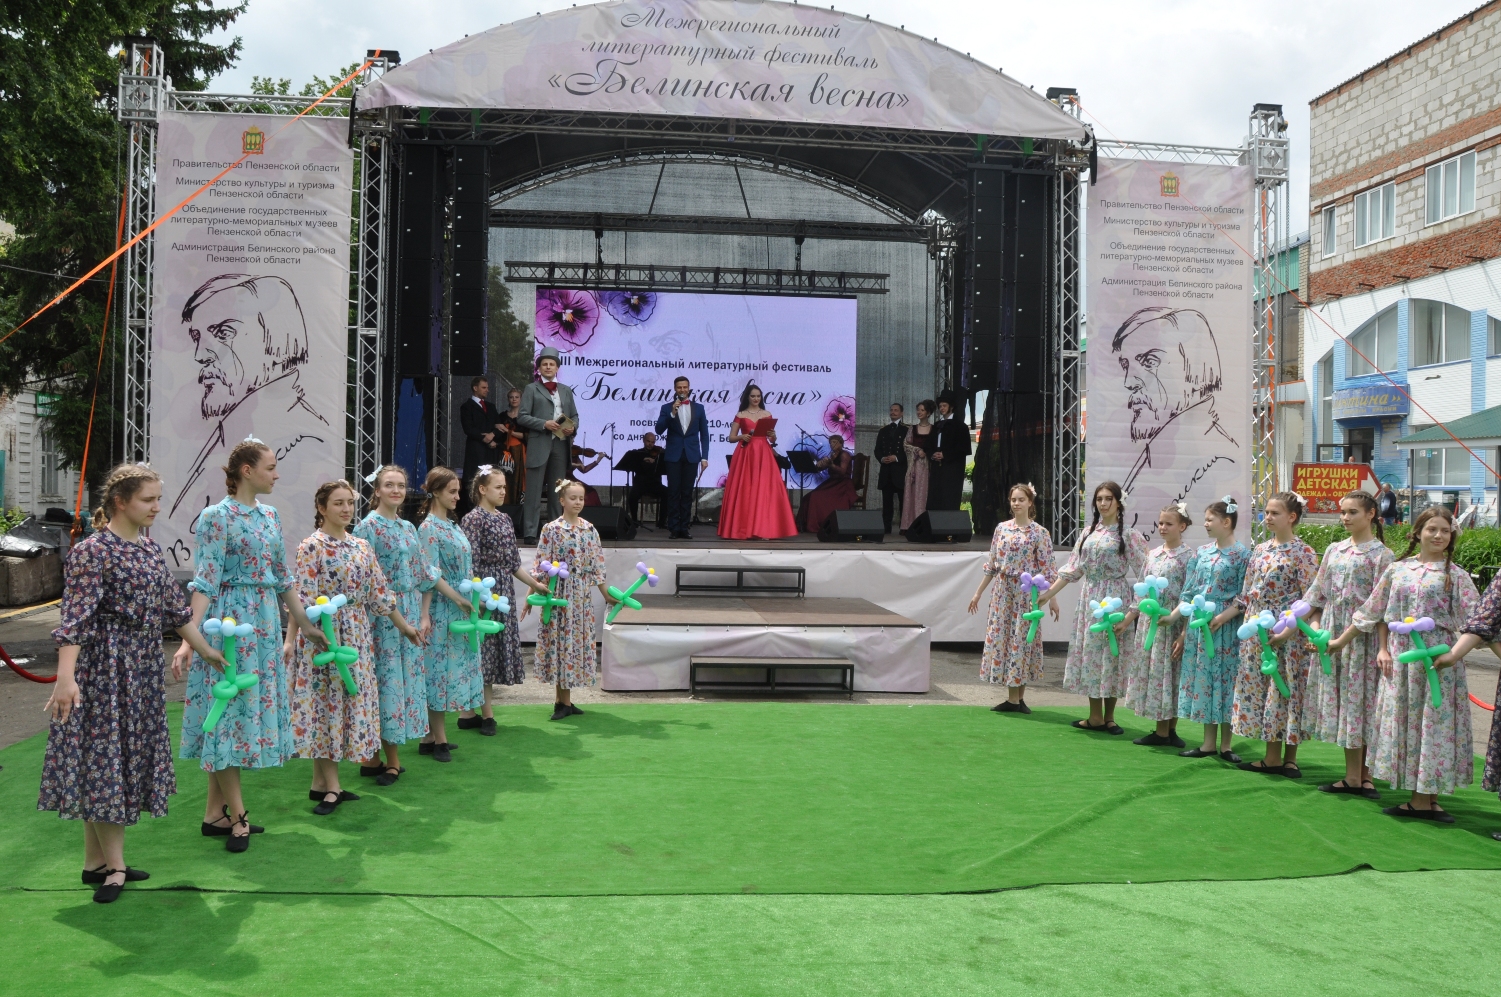 К 210-летию  известного критика в Пензенской области провели фестиваль «Белинская весна»